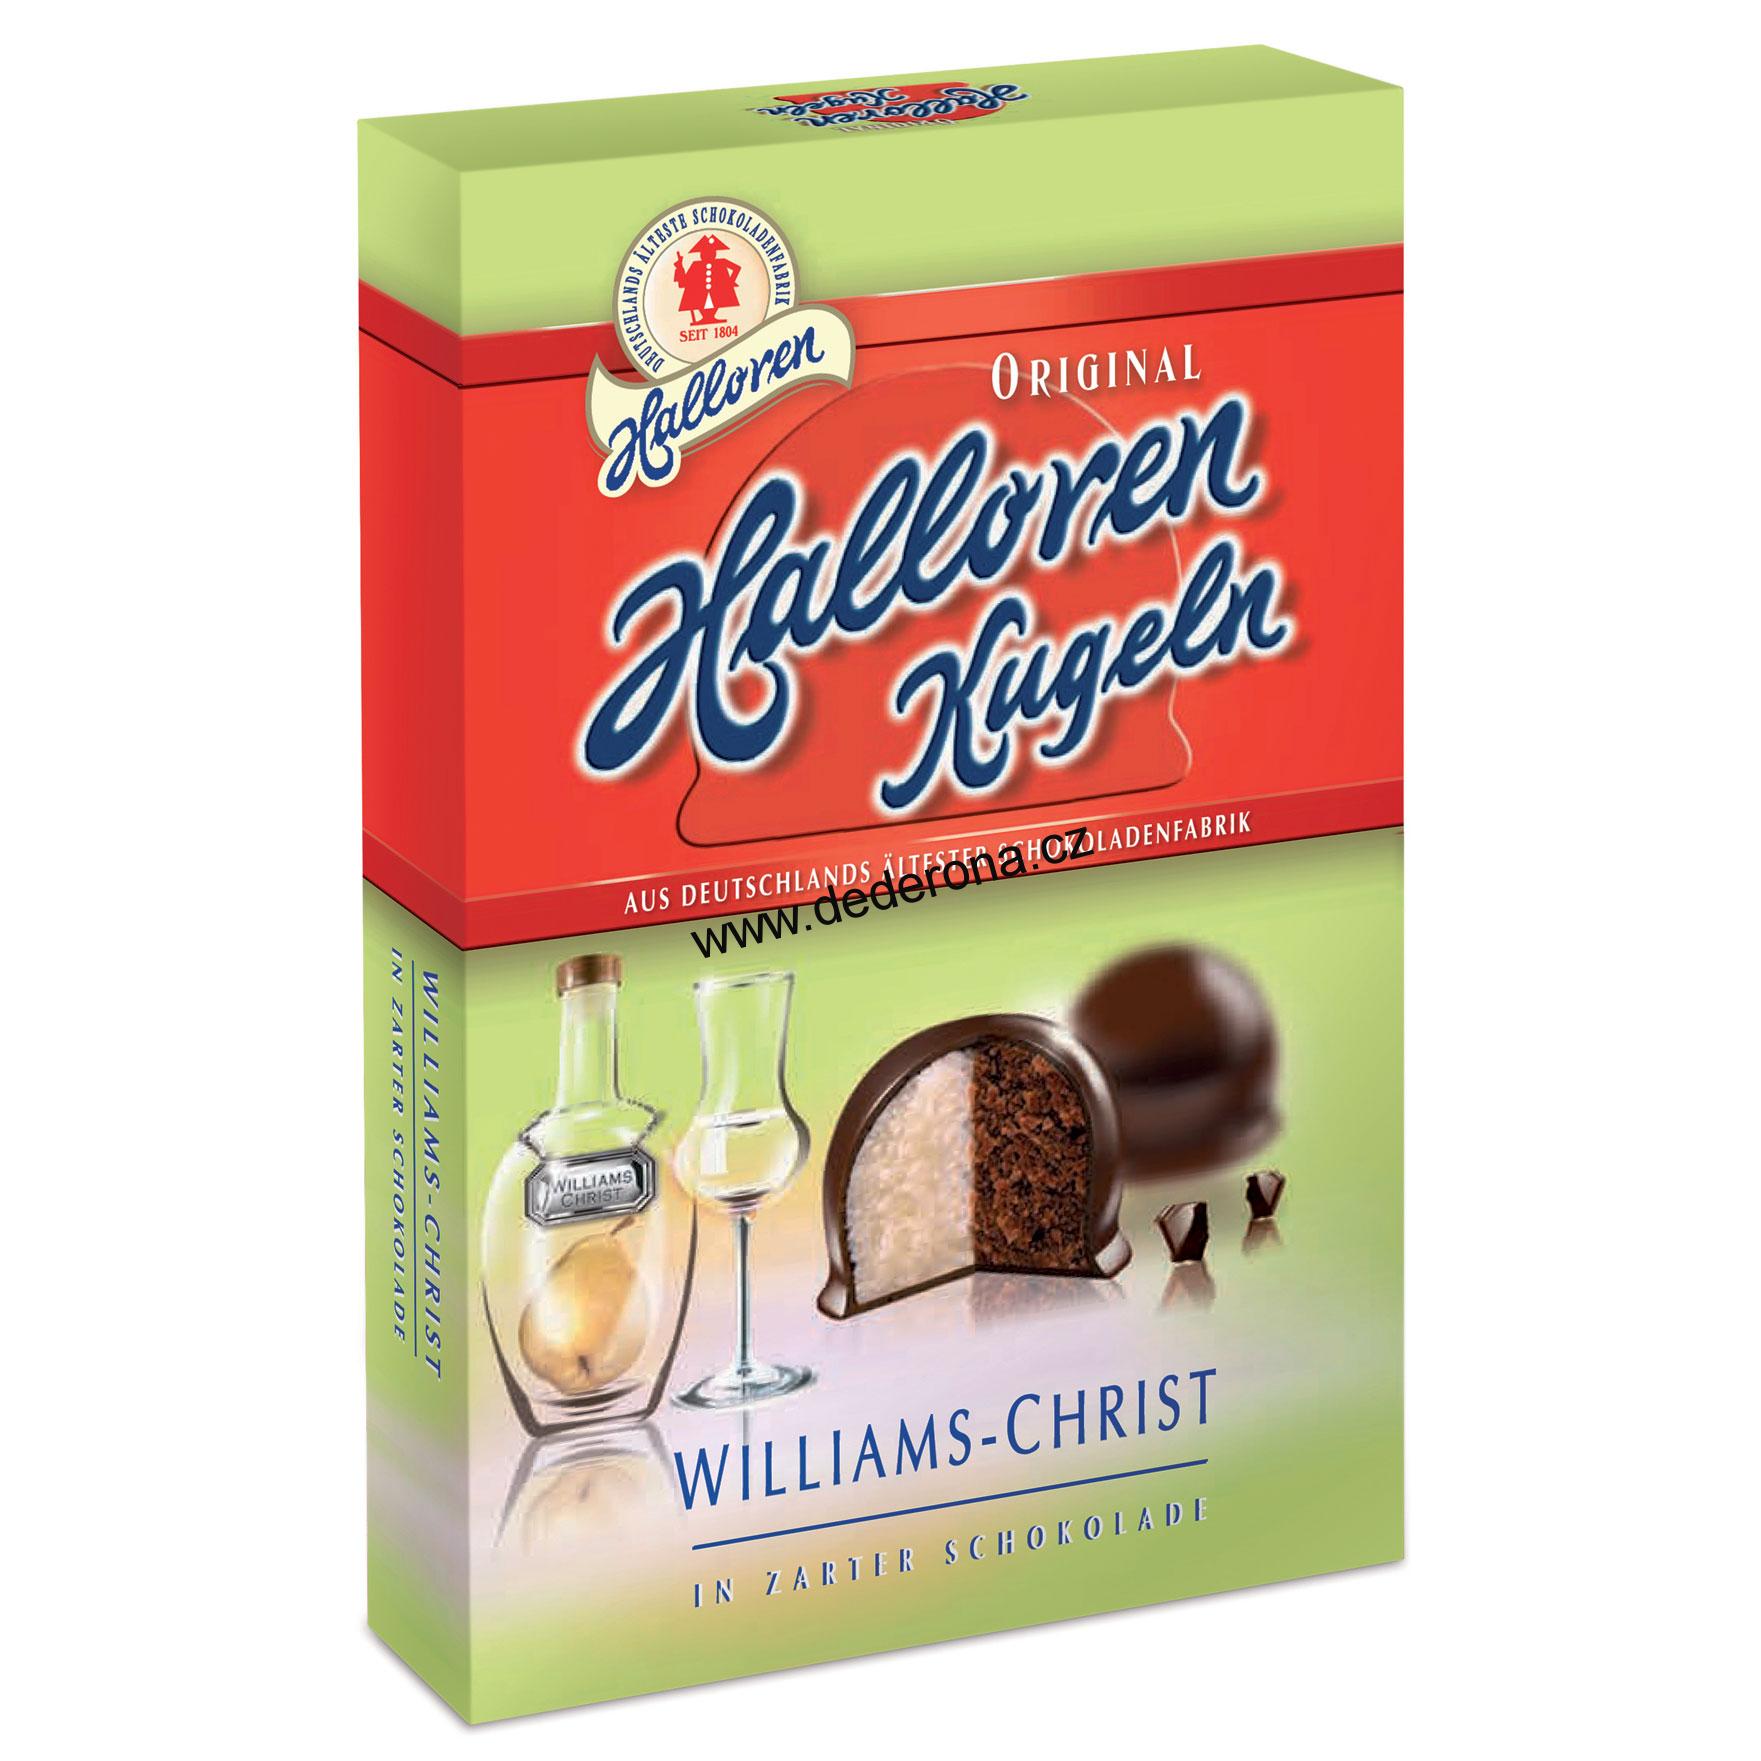 Halloren-Čokoládové kuličky WILLIAMS-CHRIST 12ks-Německo!